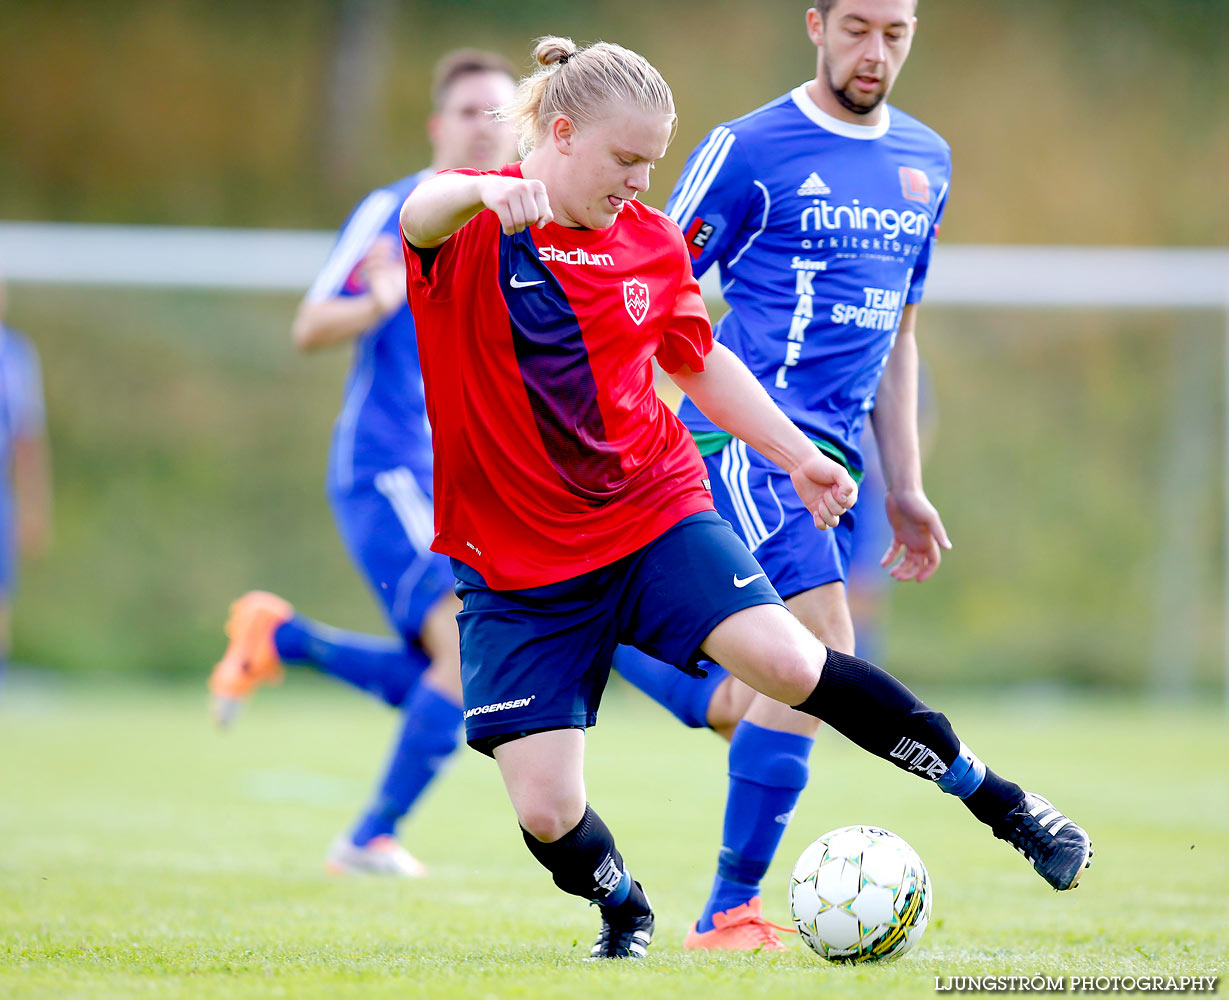 Lerdala IF-Korsberga IF 1-7,herr,Lerdala IP,Lerdala,Sverige,Fotboll,,2015,123081